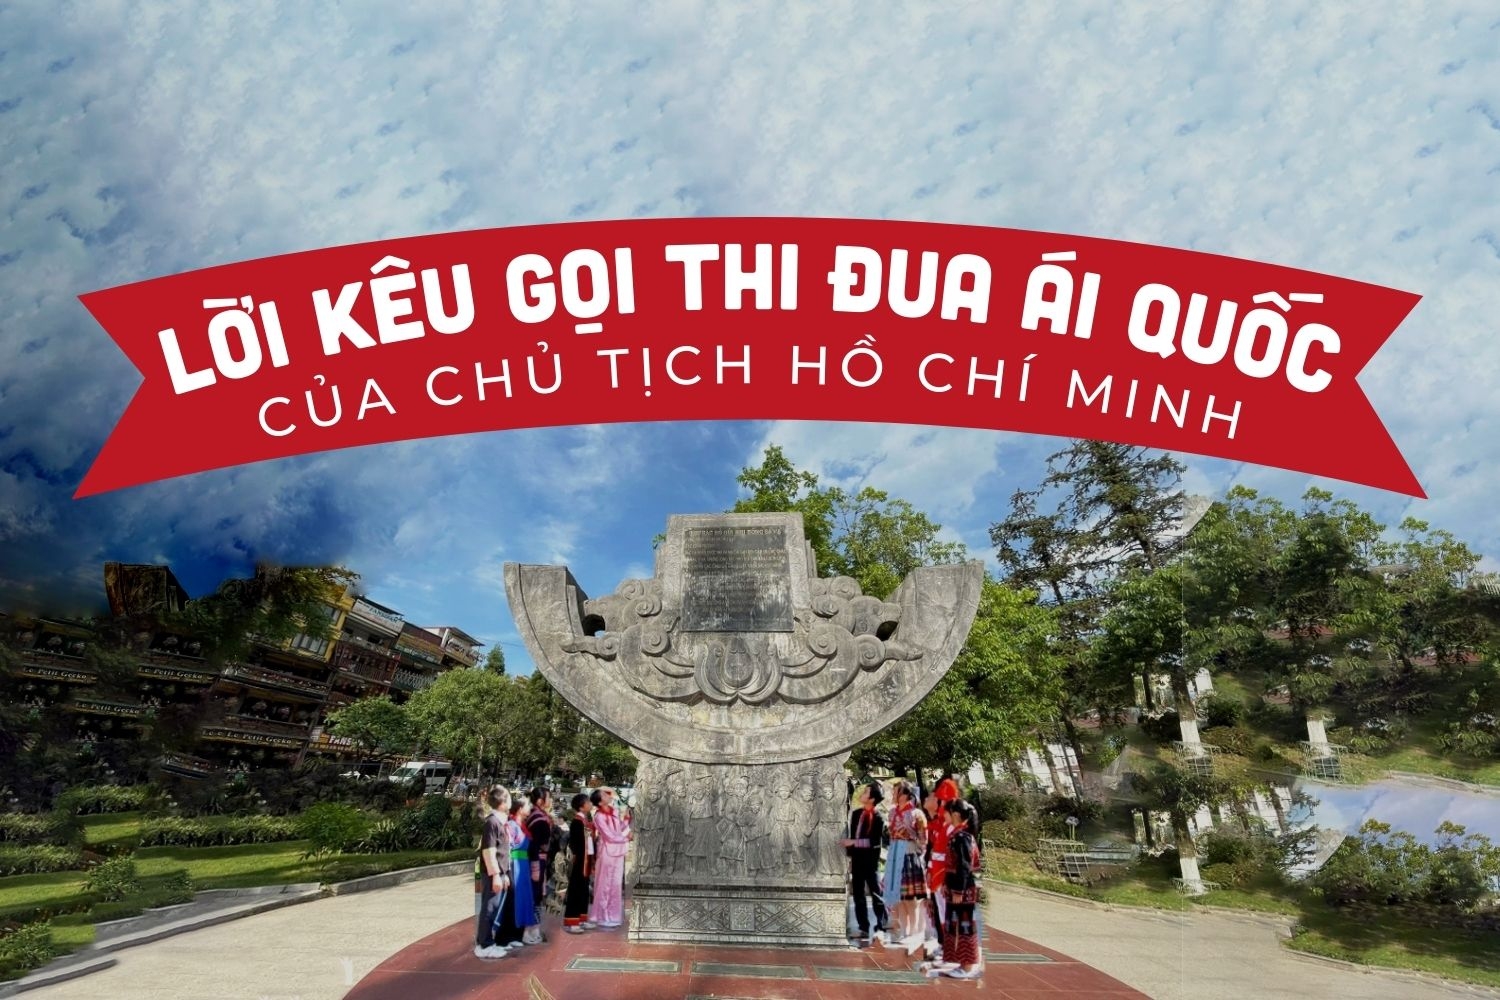 75 năm ngày Chủ tịch Hồ Chí Minh ra Lời kêu gọi thi đua ái quốc (11/6/1948 - 11/6/2023)